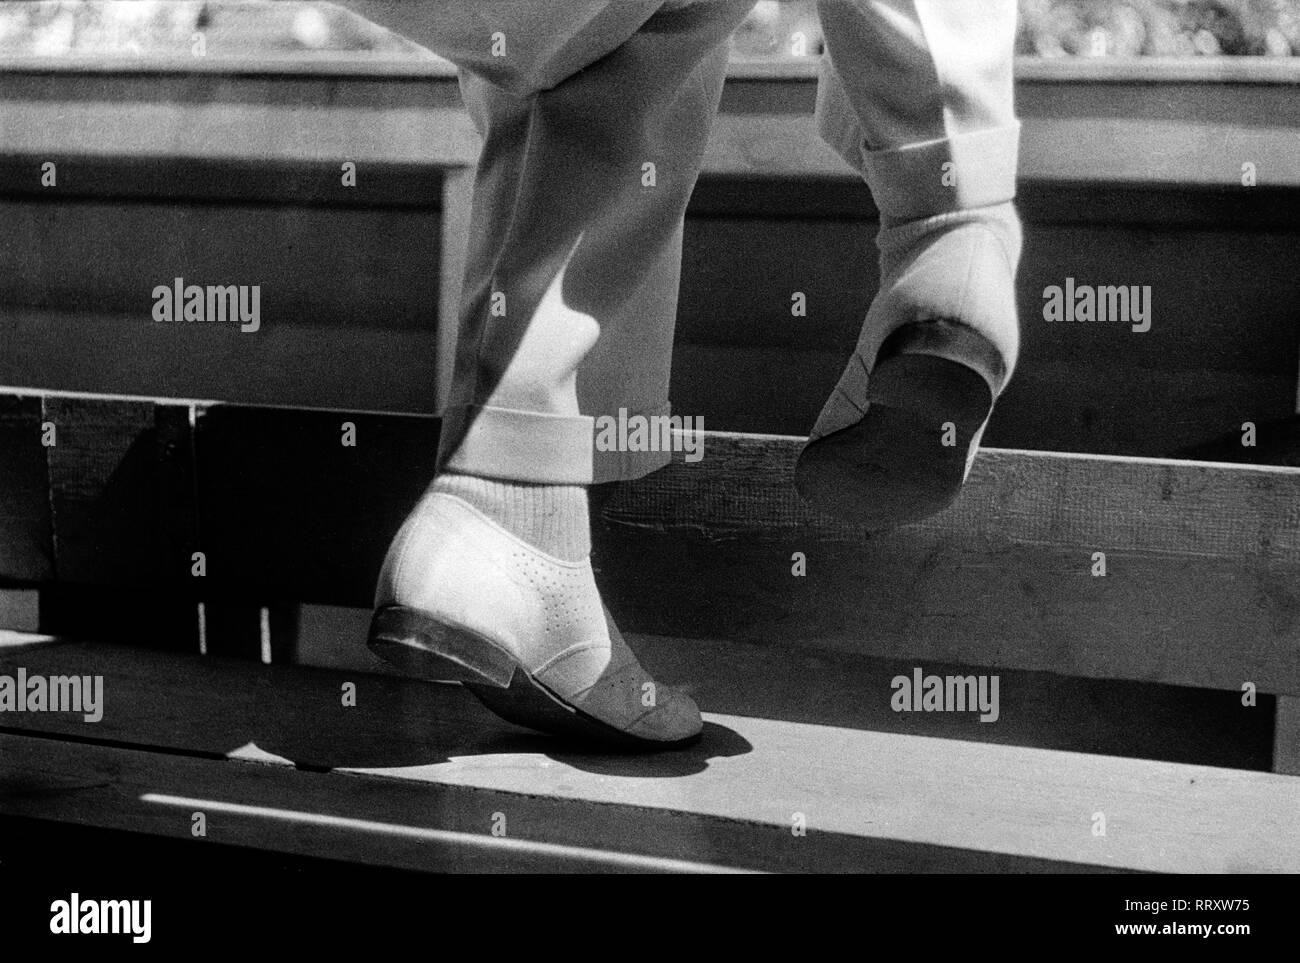 Giochi Olimpici 1936 - Germania, il Terzo Reich - Giochi Olimpici, Olimpiadi di estate 1936 a Berlino. Spettatore (scarpe e gambe) presso la tribuna durante il nuoto la concorrenza. Calzatura prospettiva - copertura speciale in occasione delle Olimpiadi 1936. Data dell'immagine 1936. Foto Erich Andres Foto Stock